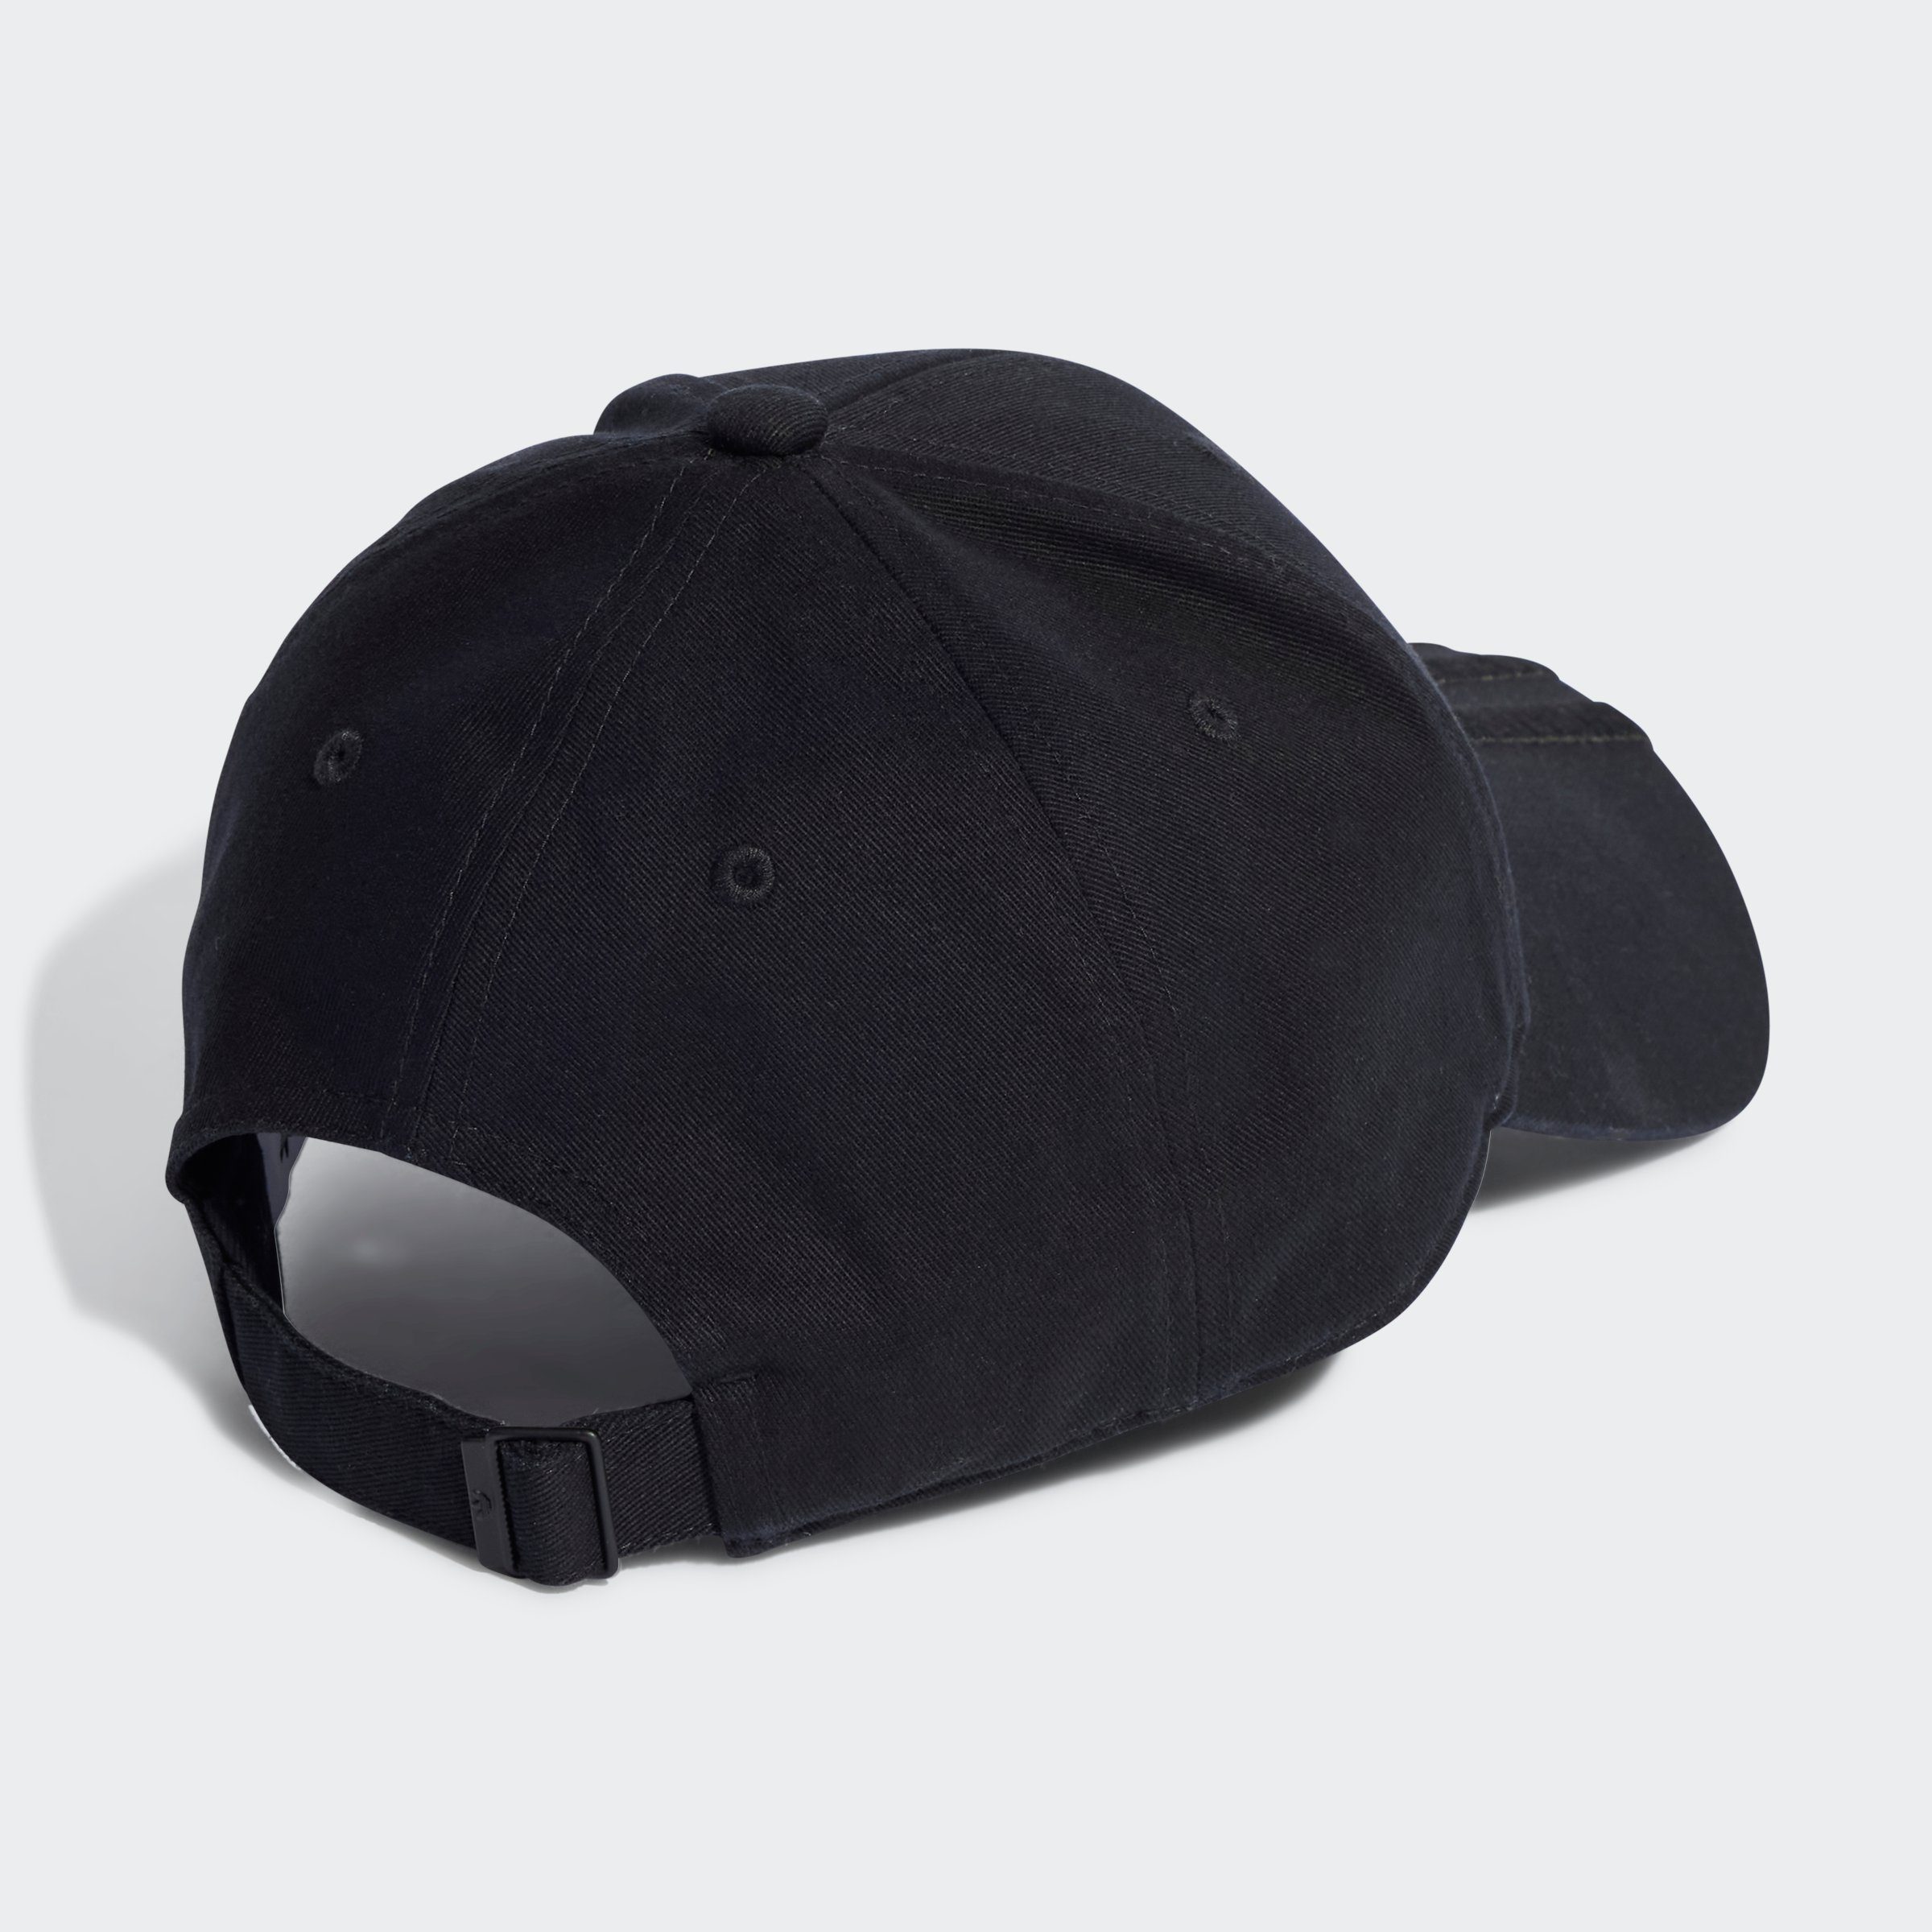 CAP / Originals Black Cap adidas Baseball Black